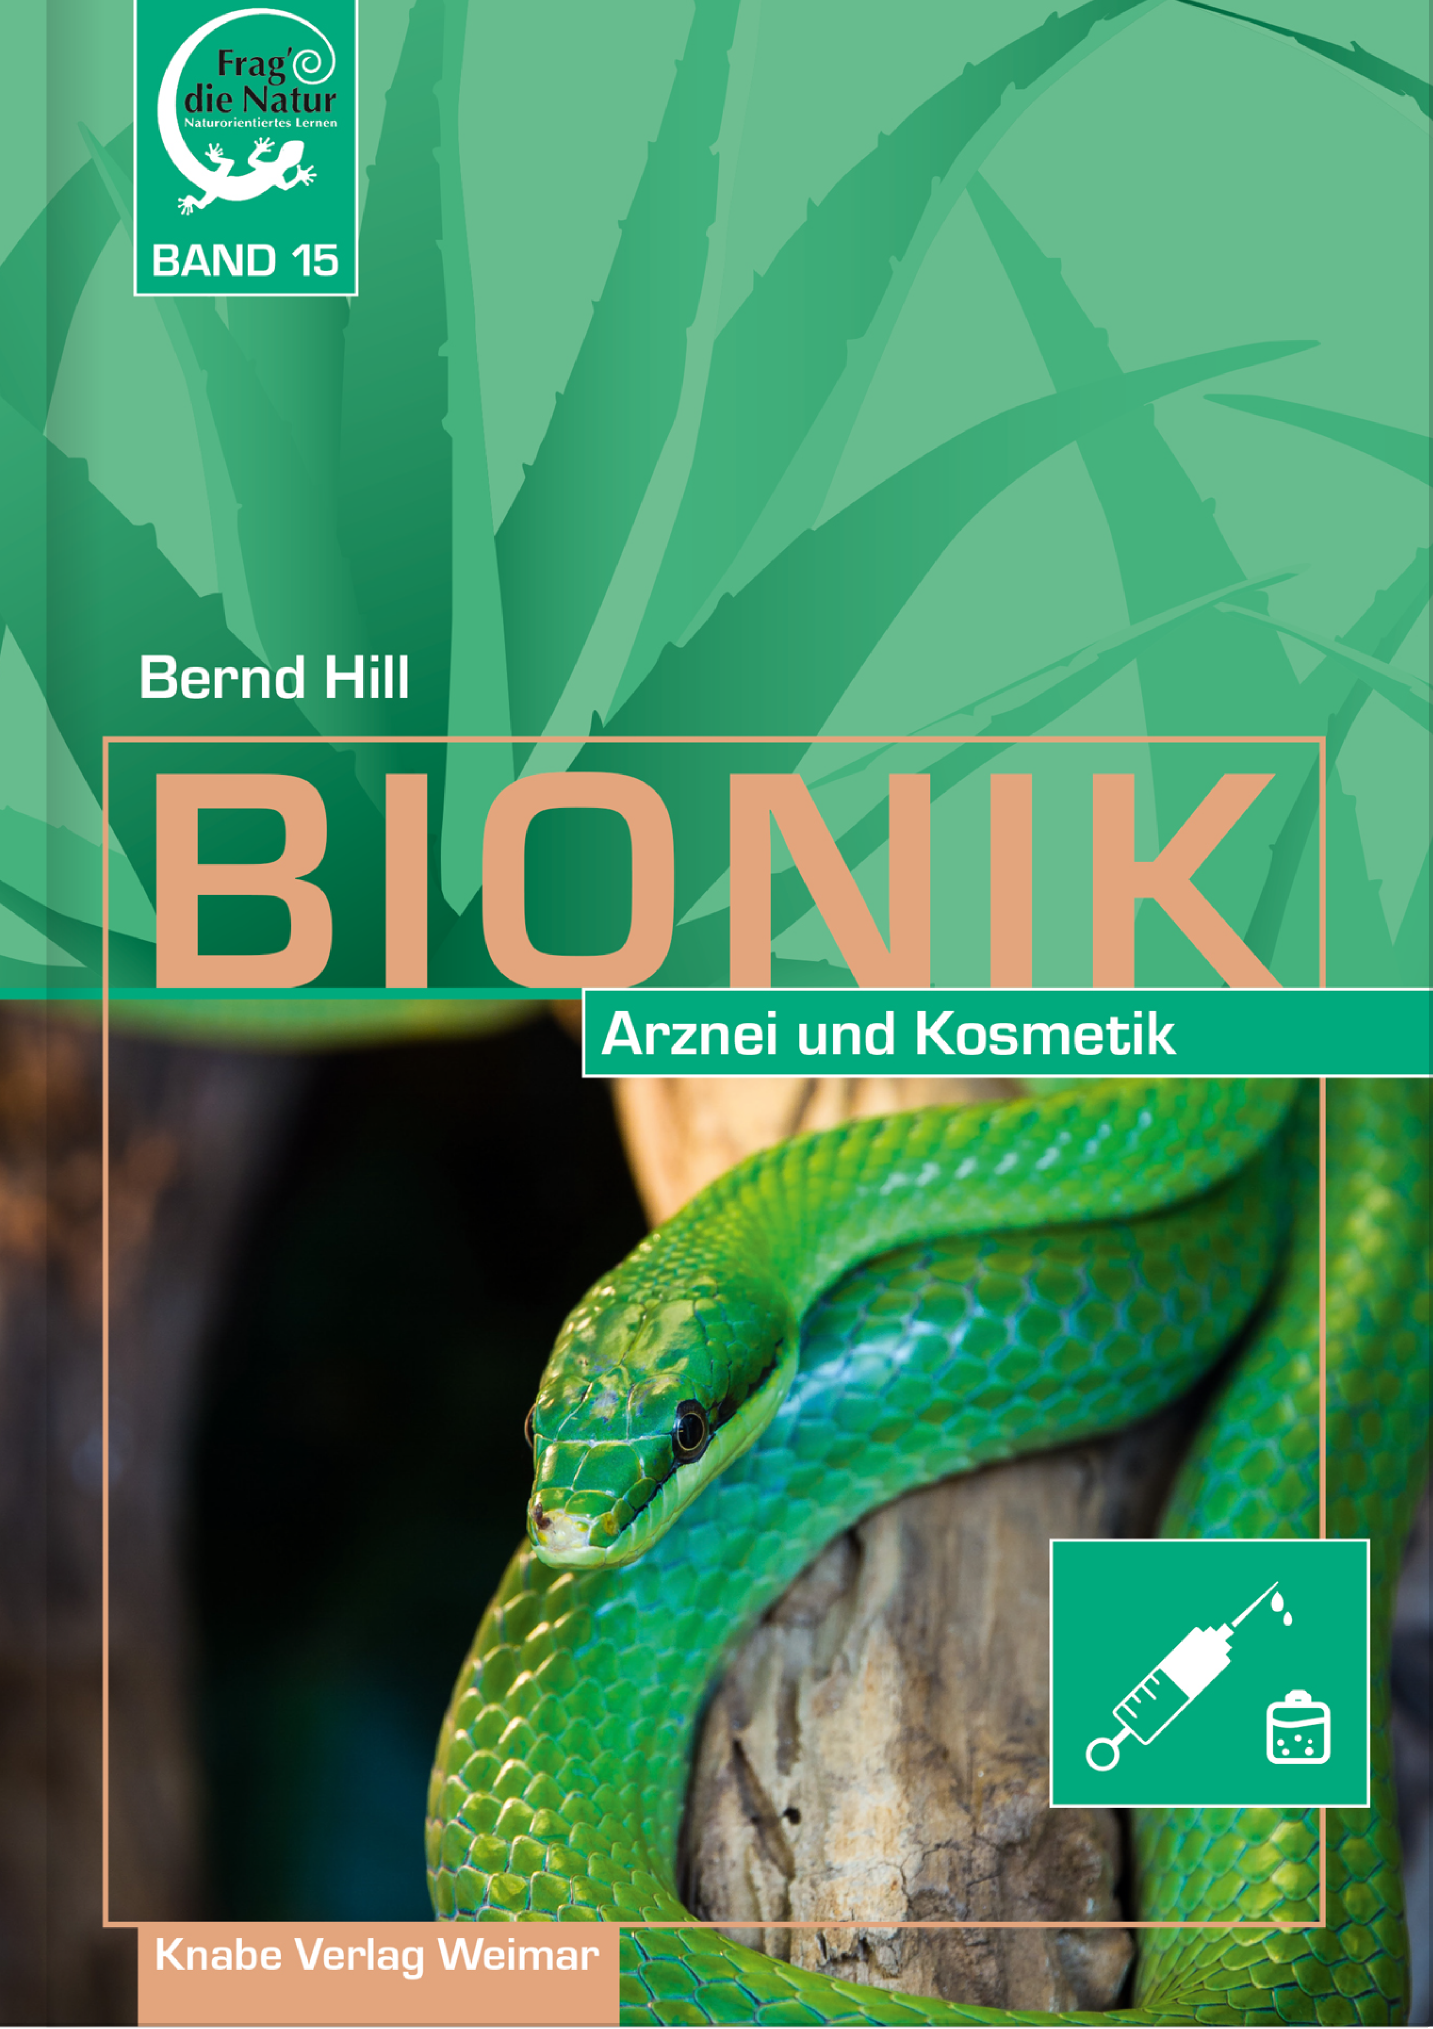 Bionik XV. Arznei und Kosmetik